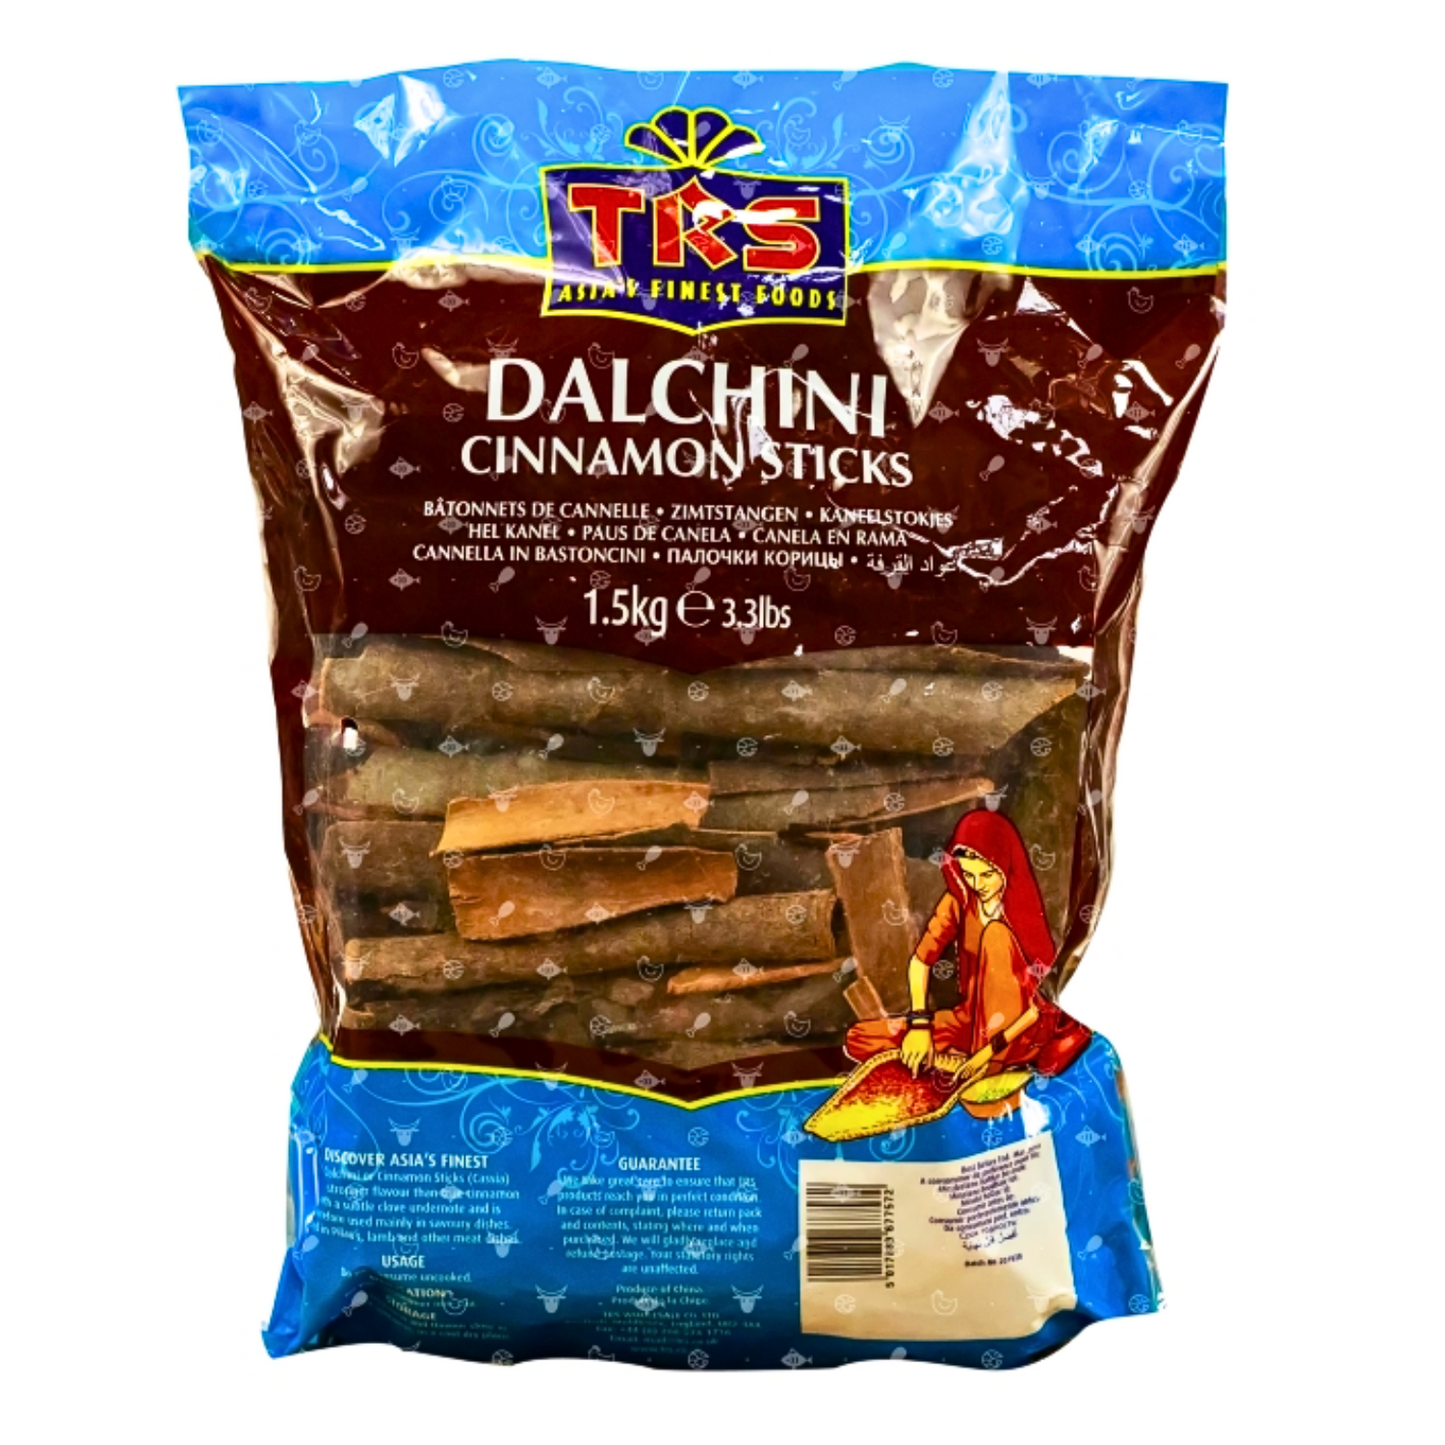 Dalchini (Cinnamon Sticks)